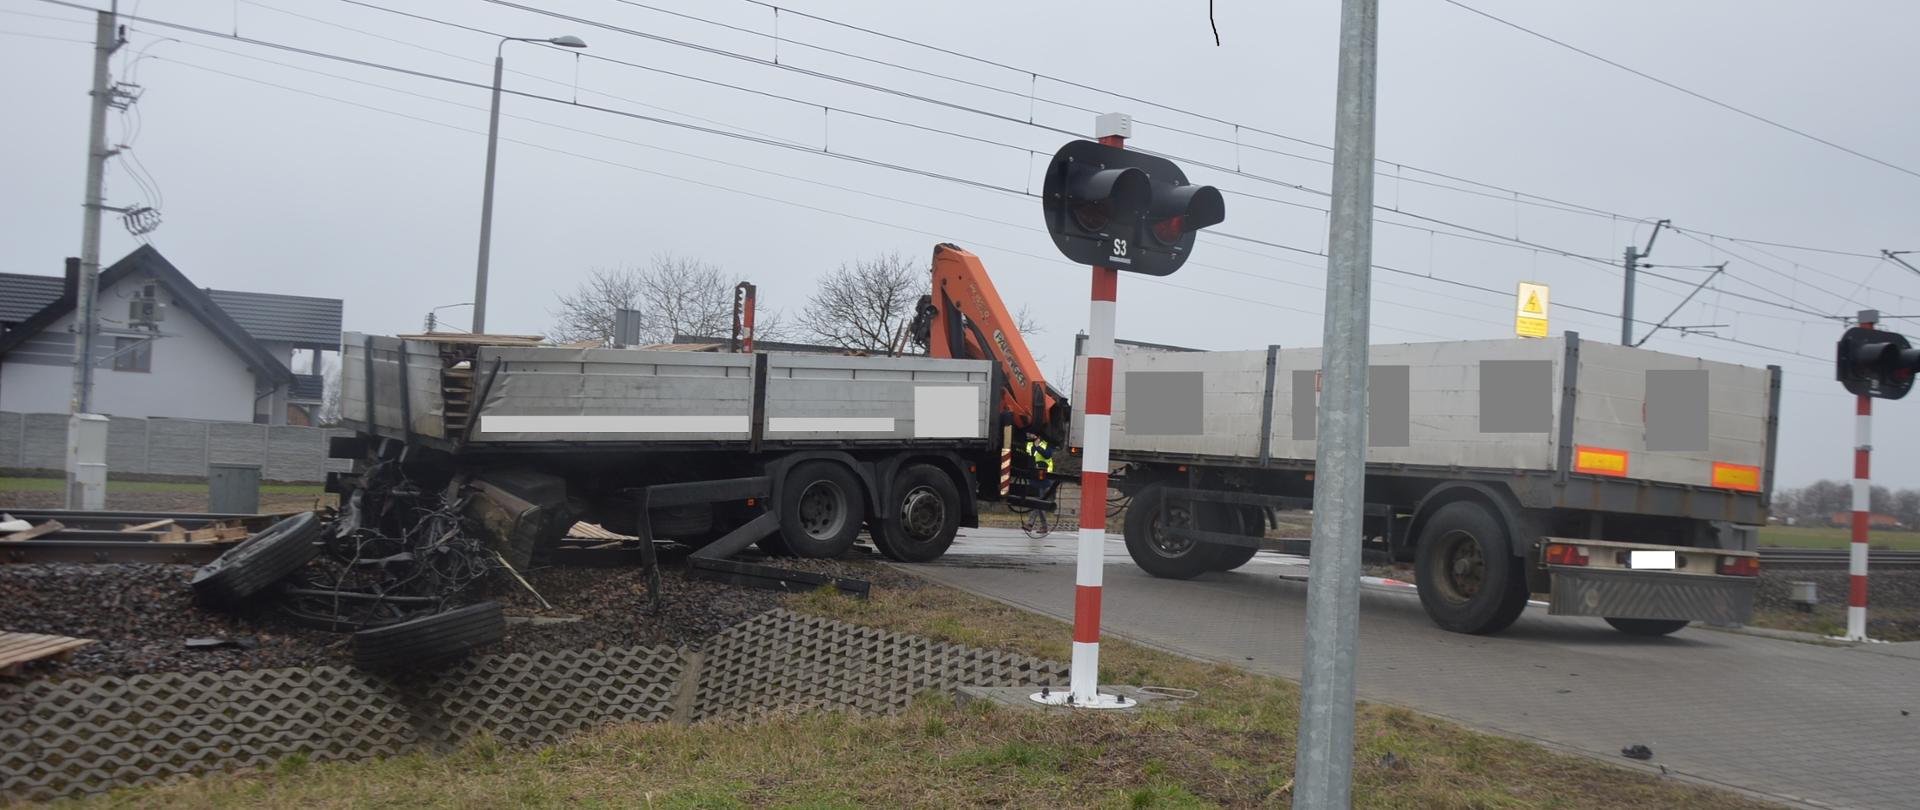 Wypadek śmiertelny na przejeździe kolejowym. Okolice miejscowości Kąty (gm. Rawicz). Na przejeździe kolejowym znajduje się część ładunkowa samochodu ciężarowego (znacznie uszkodzona) oraz podłączona do niej przyczepa. Na samochodzie, na którym przewożone były europalety, zamontowany jest HDS. Część towaru rozrzucona jest na torowisku. W tle zabudowania